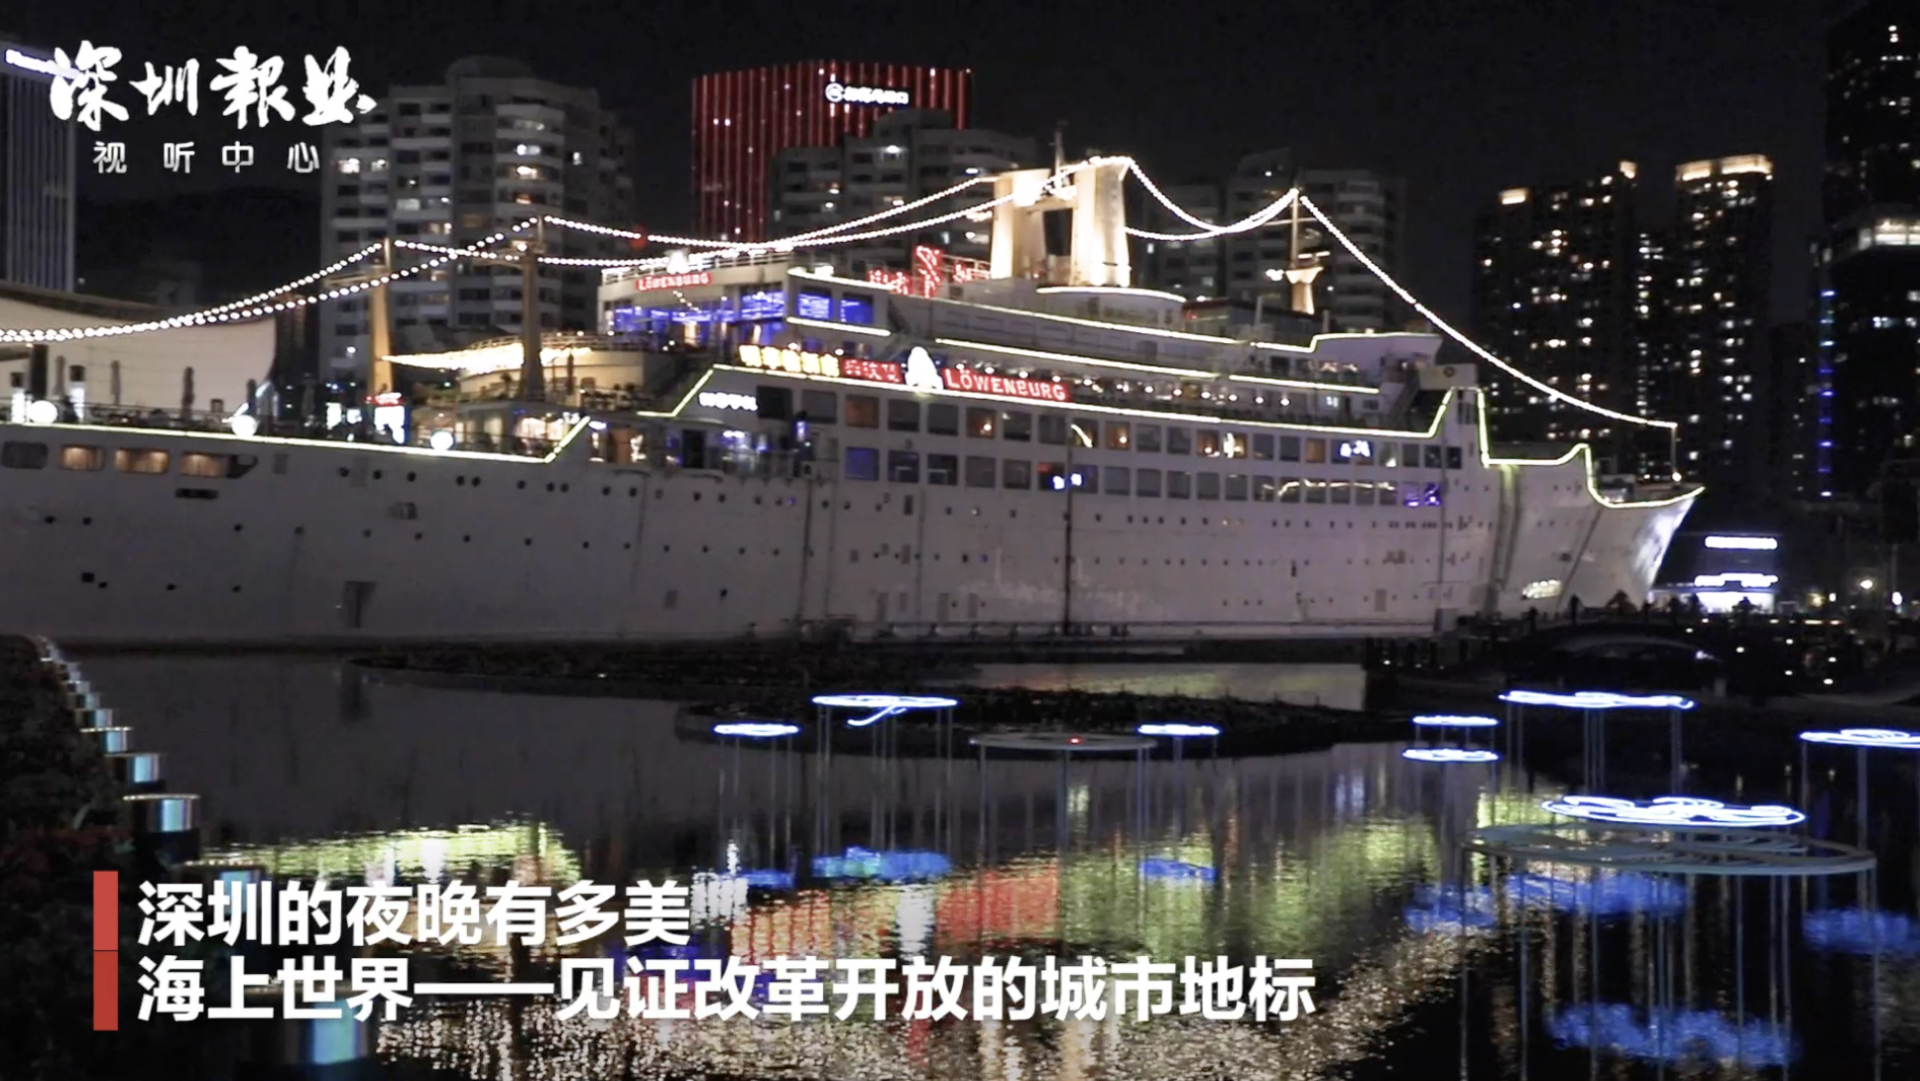 深圳的夜晚有多美 海上世界——见证改革开放的城市地标